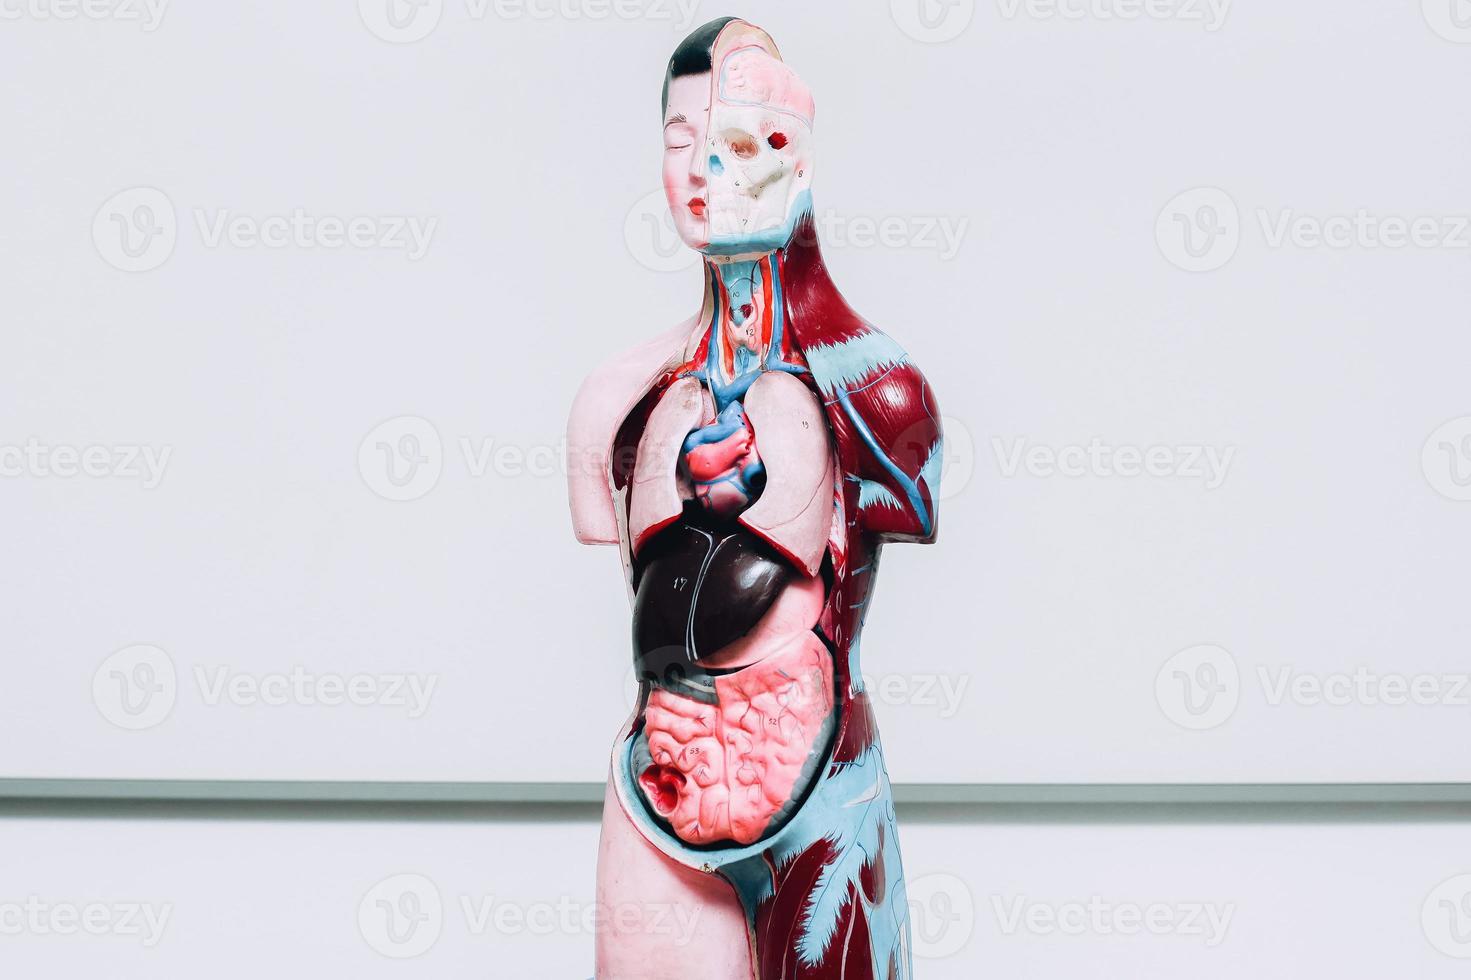 ficticio de órganos internos humanos sobre fondo blanco foto